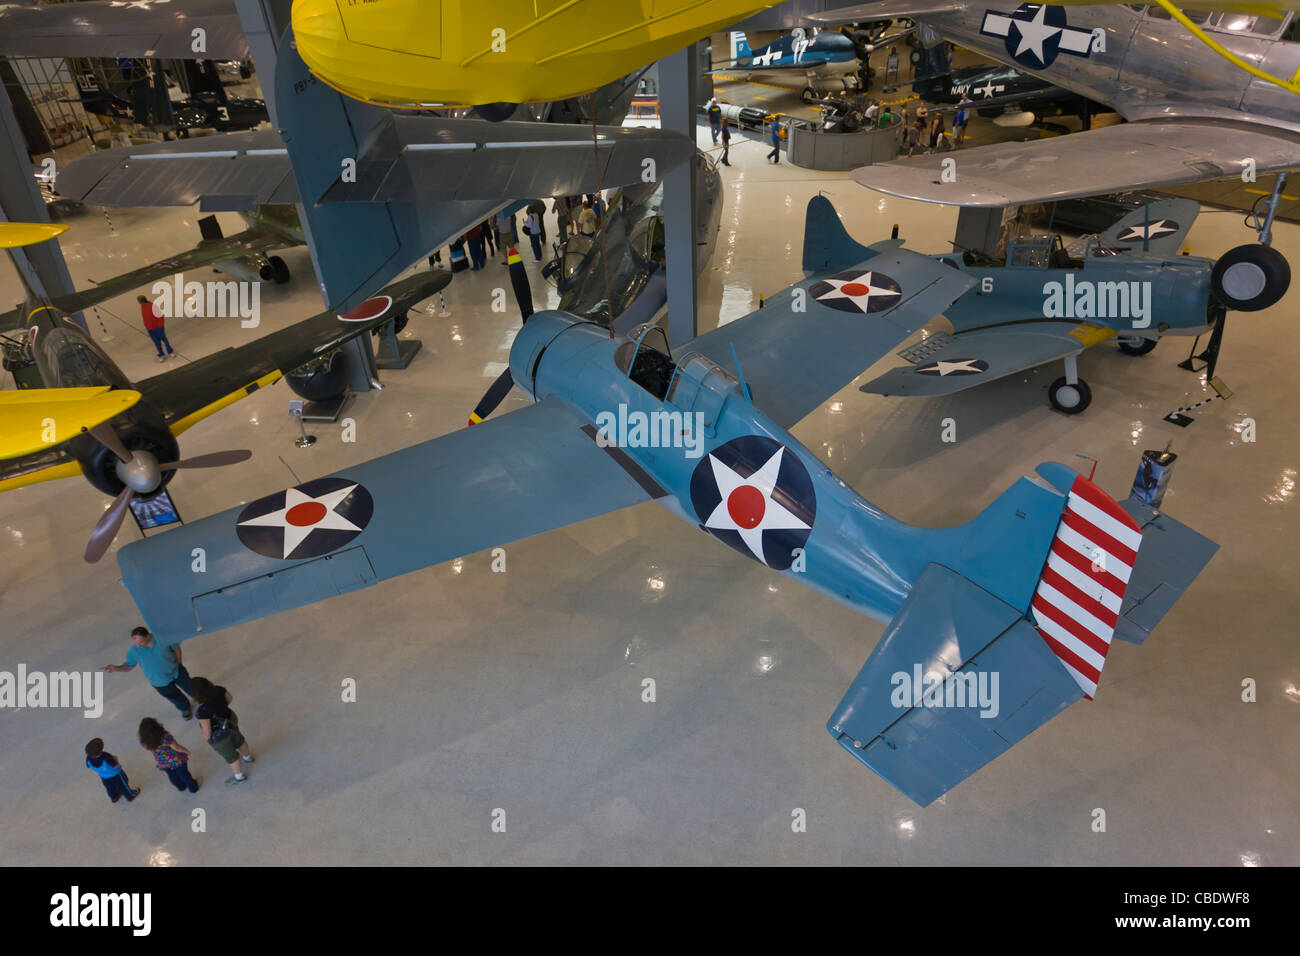 Musée de l'aviation de la Marine nationale dans la région de Pensacola en Floride Banque D'Images